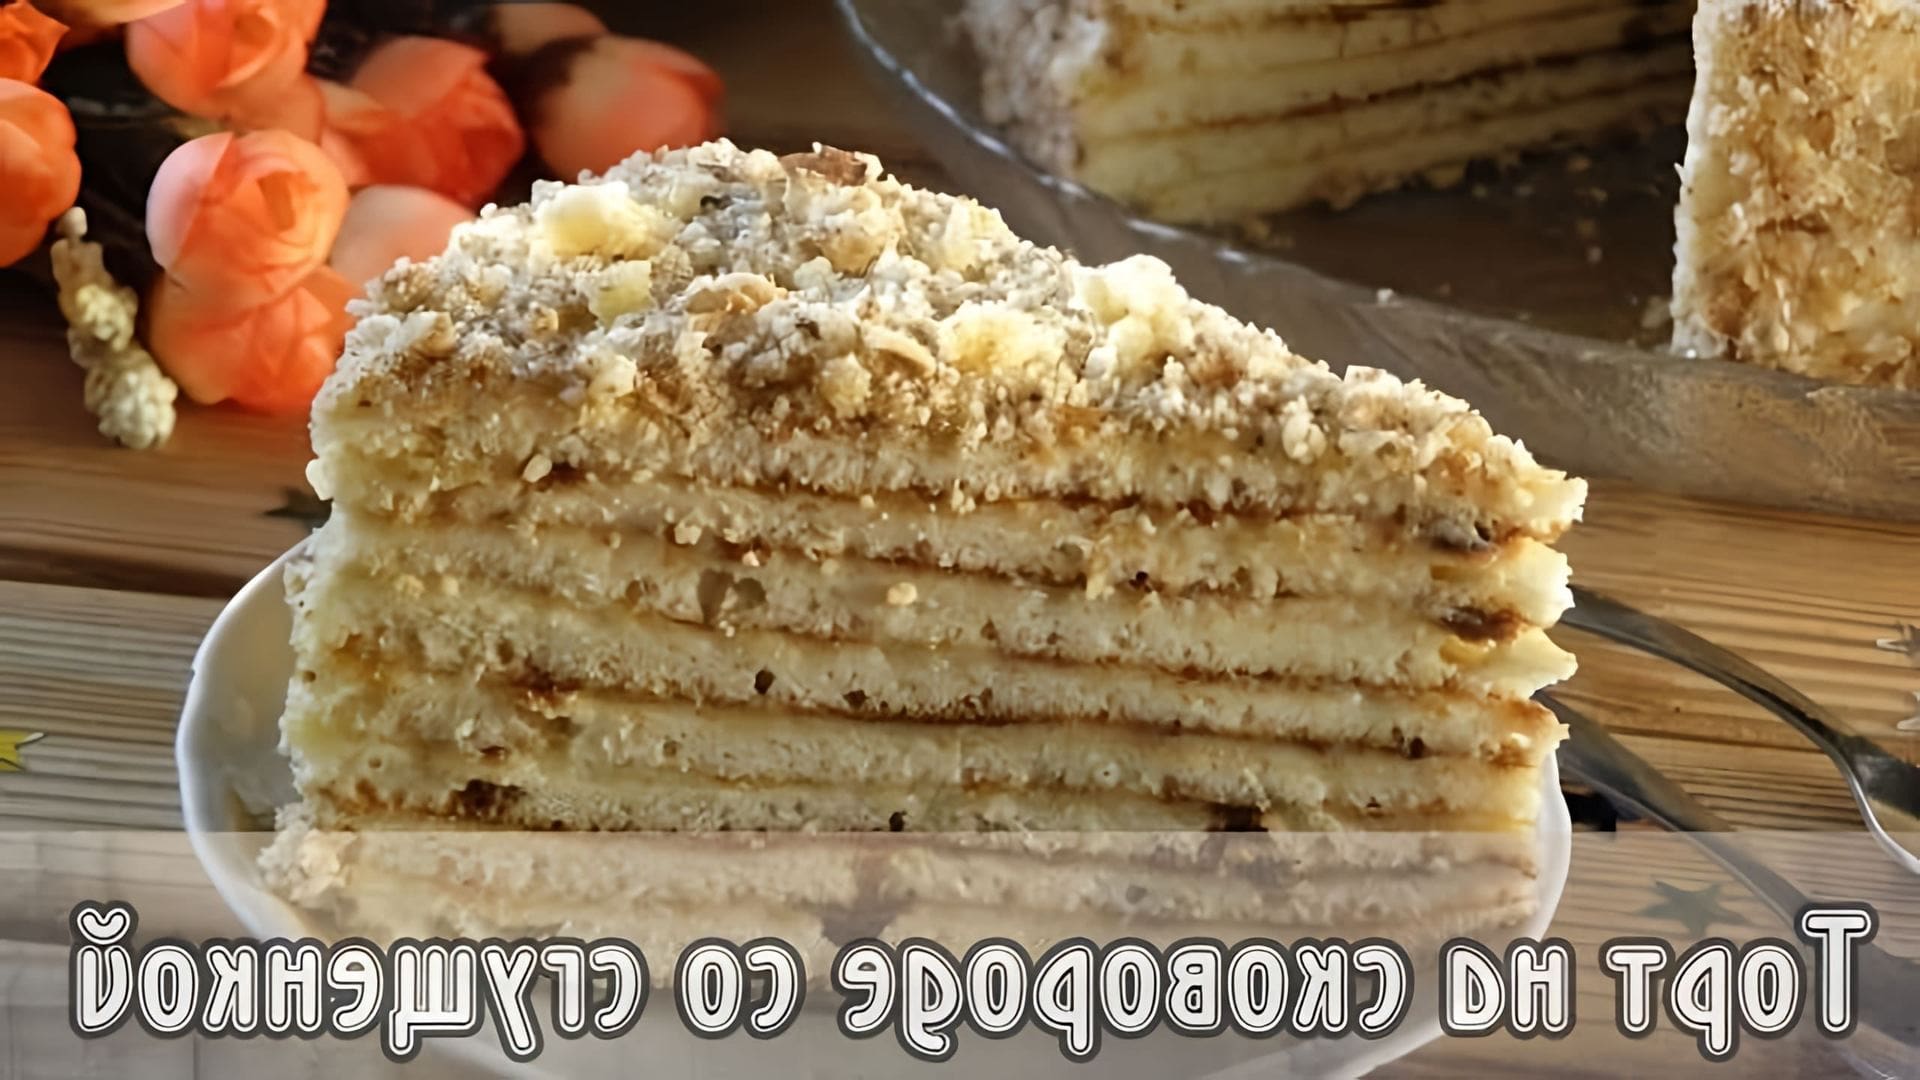 В этом видео-ролике демонстрируется процесс приготовления торта на сковороде со сгущенкой